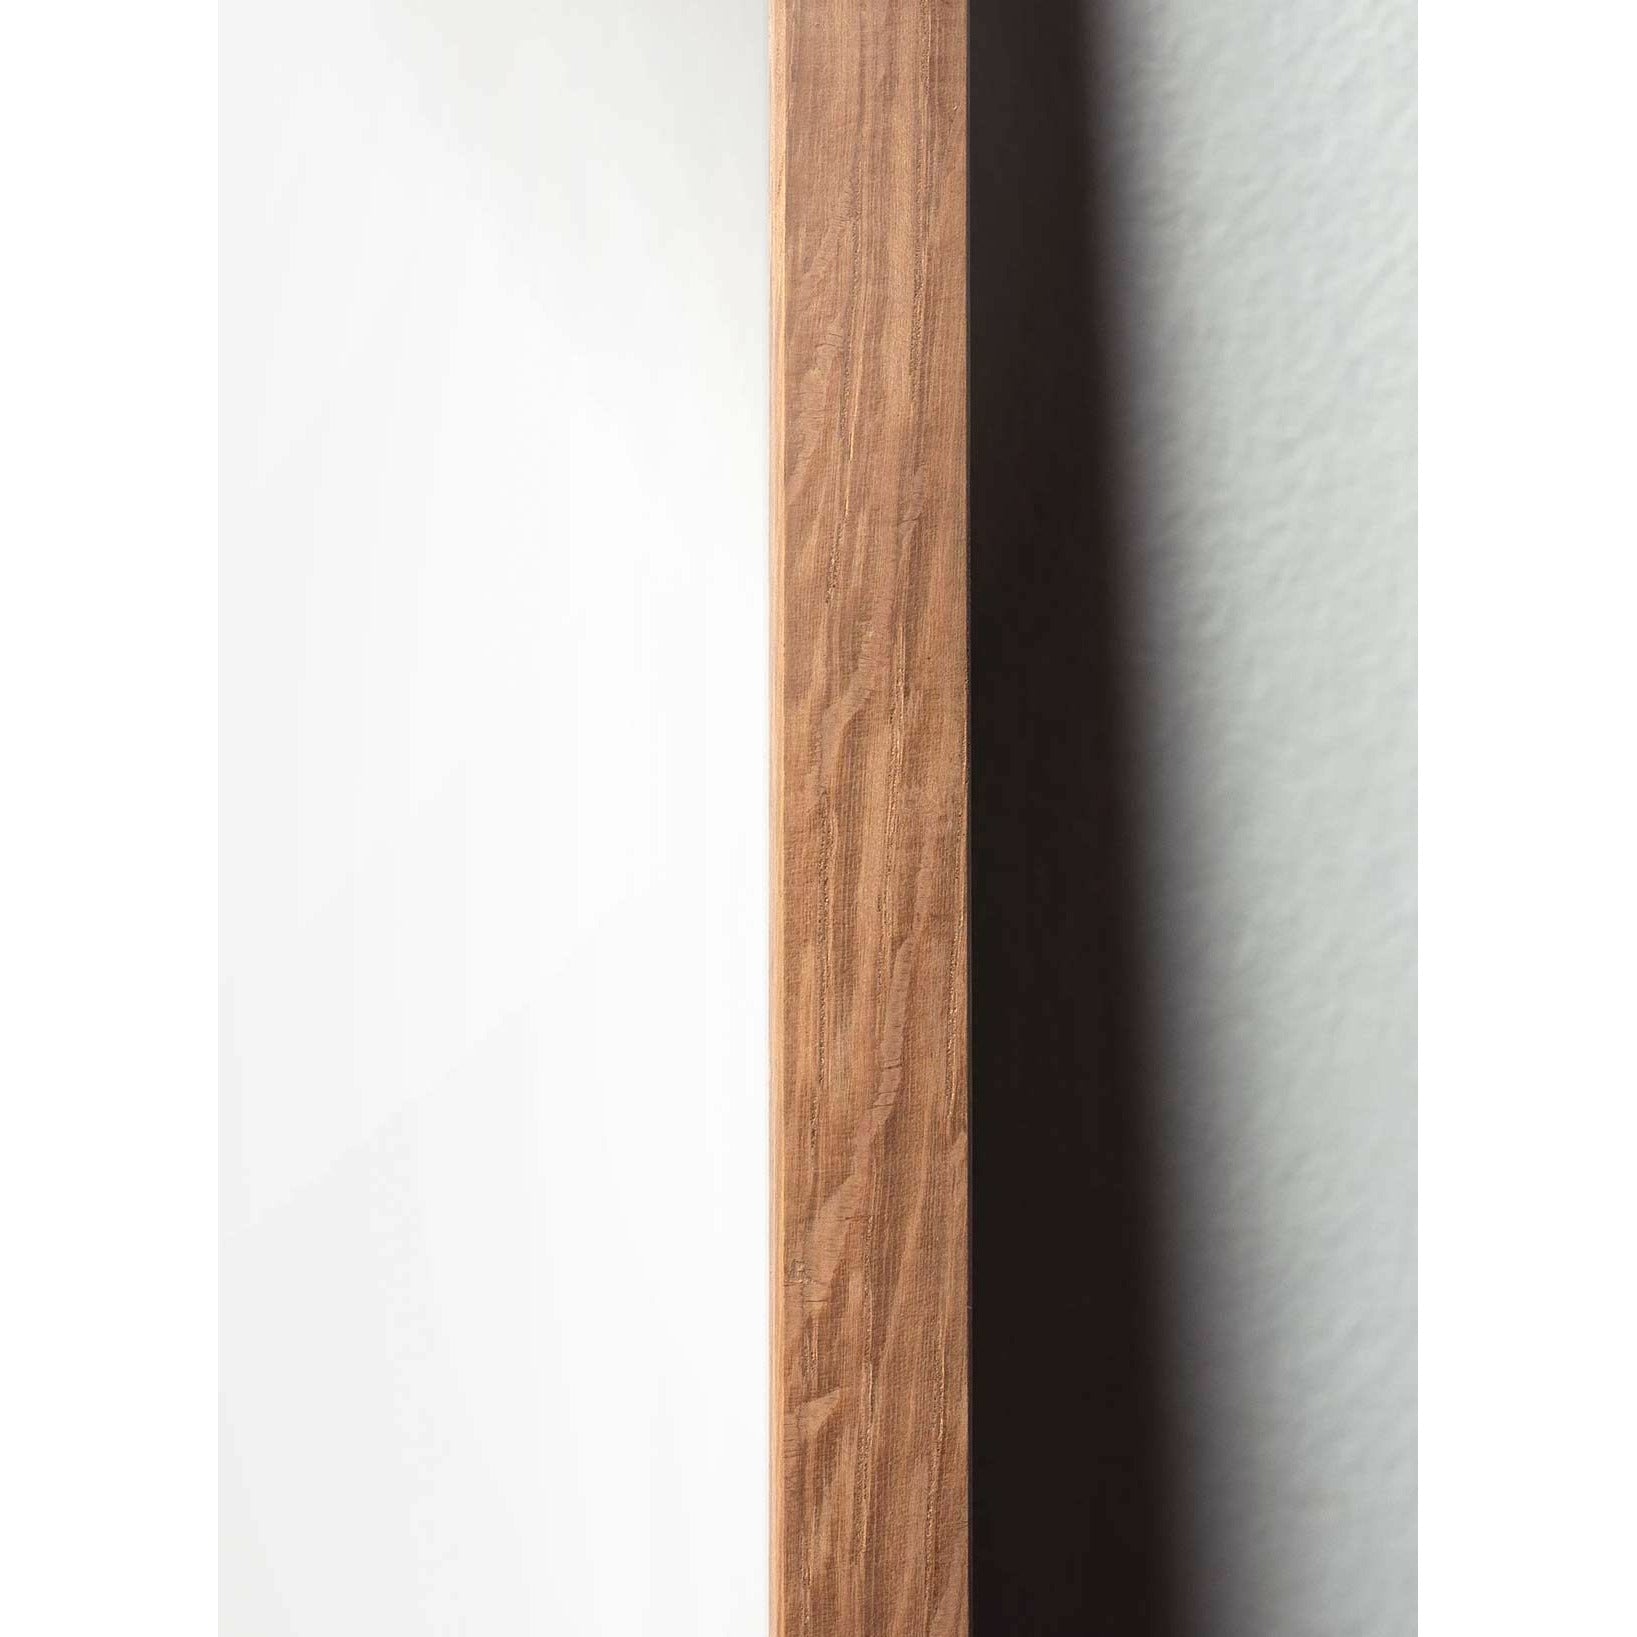 Brainchild Affiche de la ligne de fourmi, cadre en bois clair 50x70 cm, fond blanc